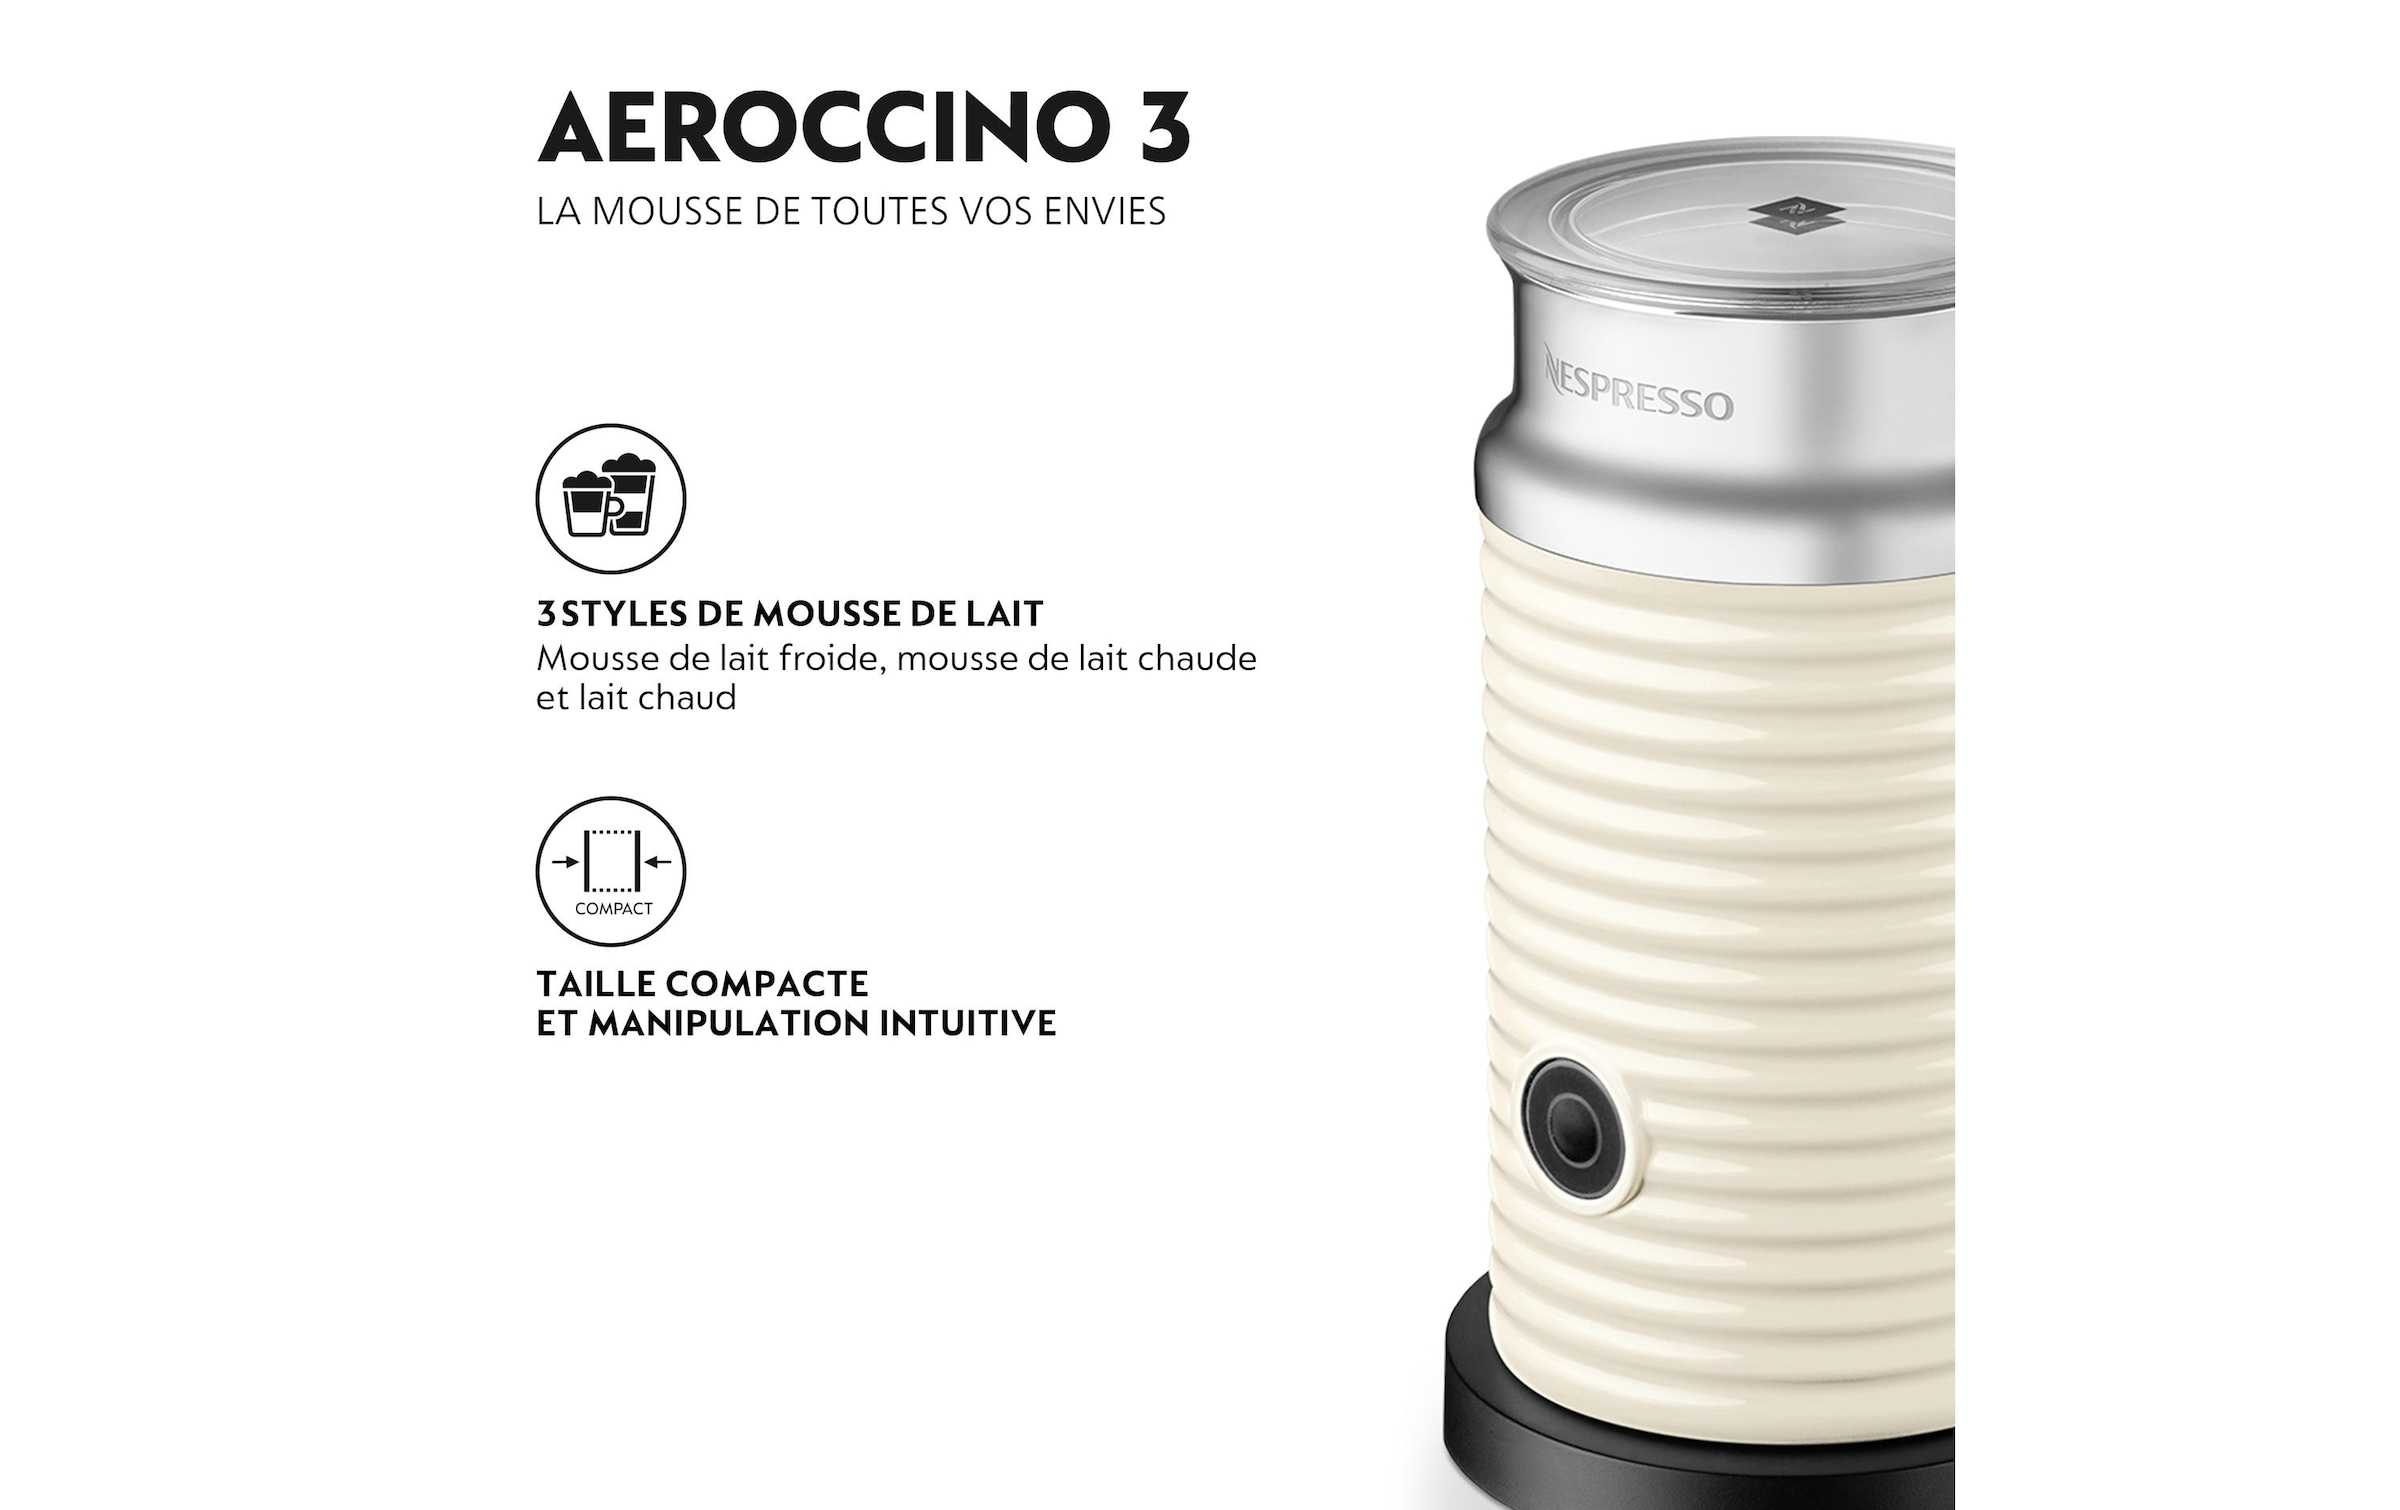 Milchaufschäumer »Nespresso Milchschäumer Aero«